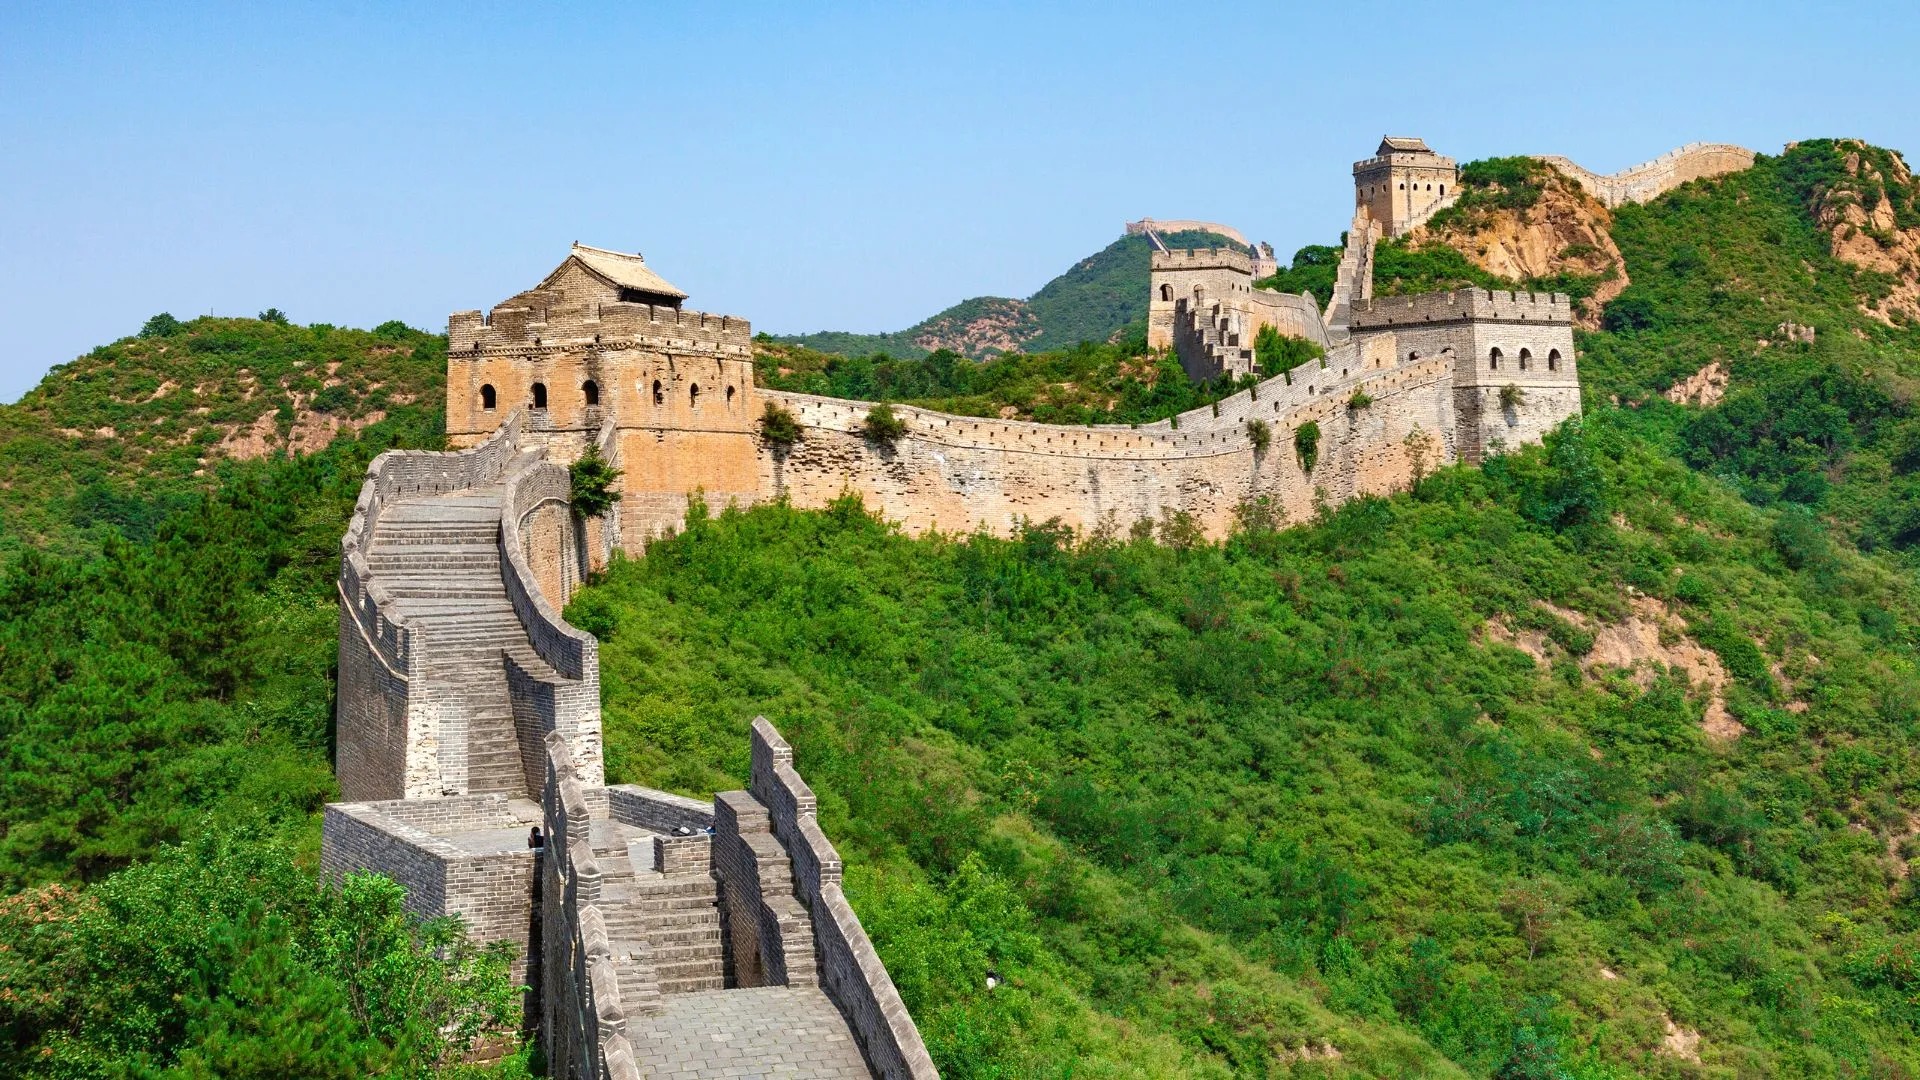 Du lịch Trung Quốc: Vạn Lý Trường Thành và những sự thật thú vị - iVIVU.com